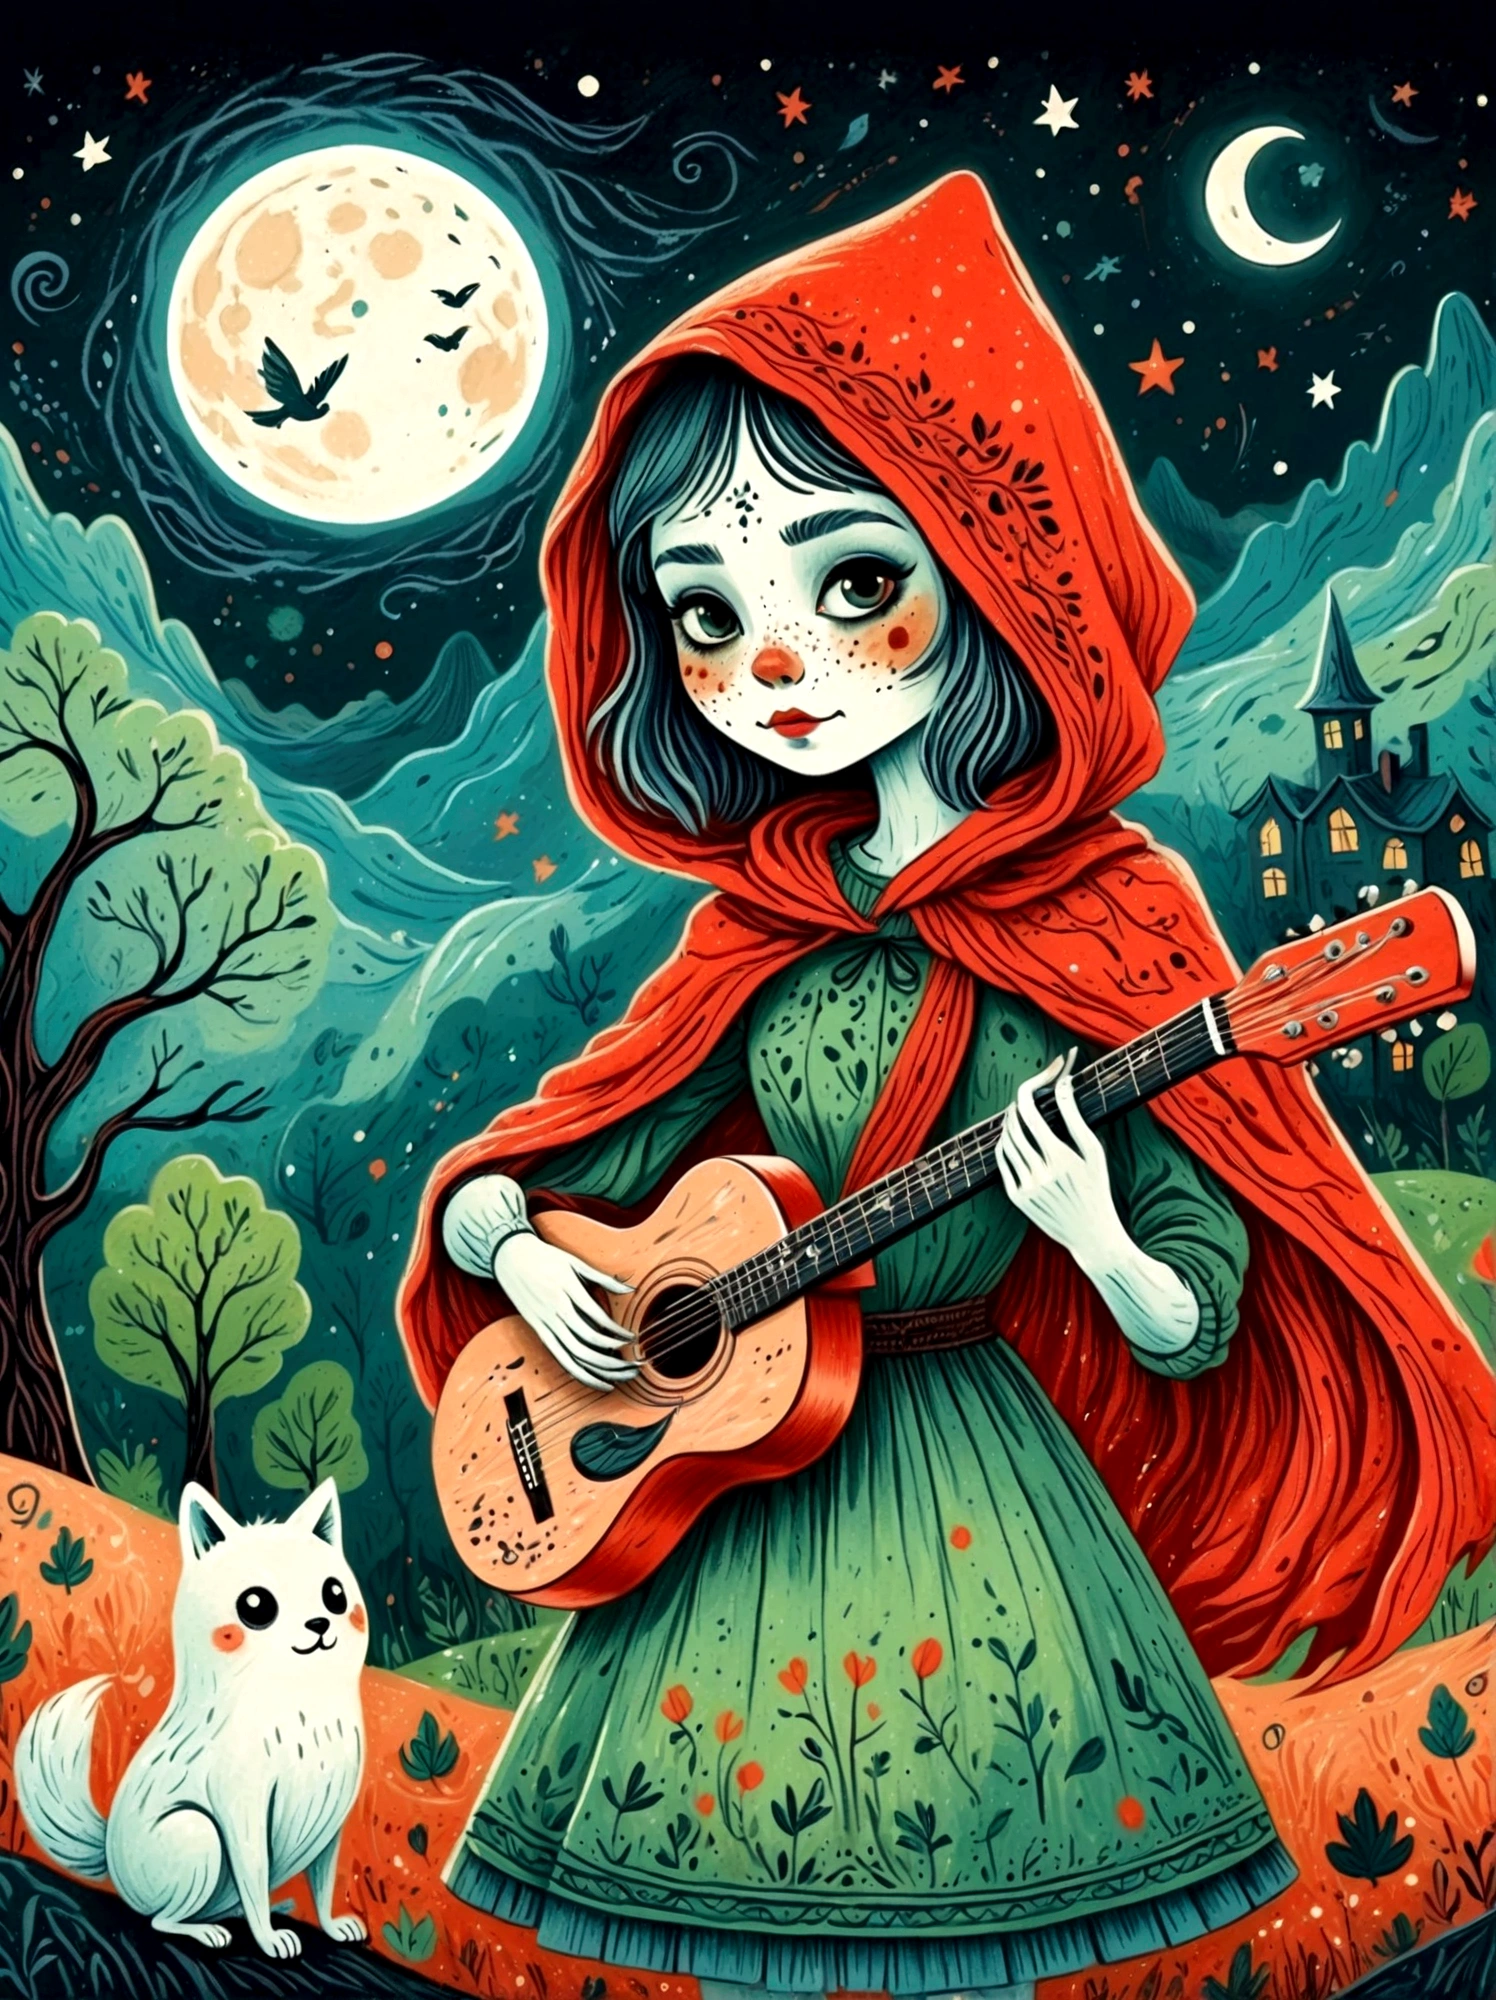 卡通手绘, 1女孩, 独自的, 可爱年轻迷人的小红帽女孩，浓浓僵尸妆, 弹奏一把旧吉他，吉他手，幽灵人群，幽灵观察者，演唱会现场，繁星点点的夜晚，阴沉而迷雾弥漫的氛围，可爱的荒谬，非凡外表的吸引与拒绝，神奇的天真艺术，明亮的蓝色和绿色，调色板是红色, 橙色和黑色的色调，具有粗略的风格, 背景应该有简单的手绘涂鸦图案, 1shxx1